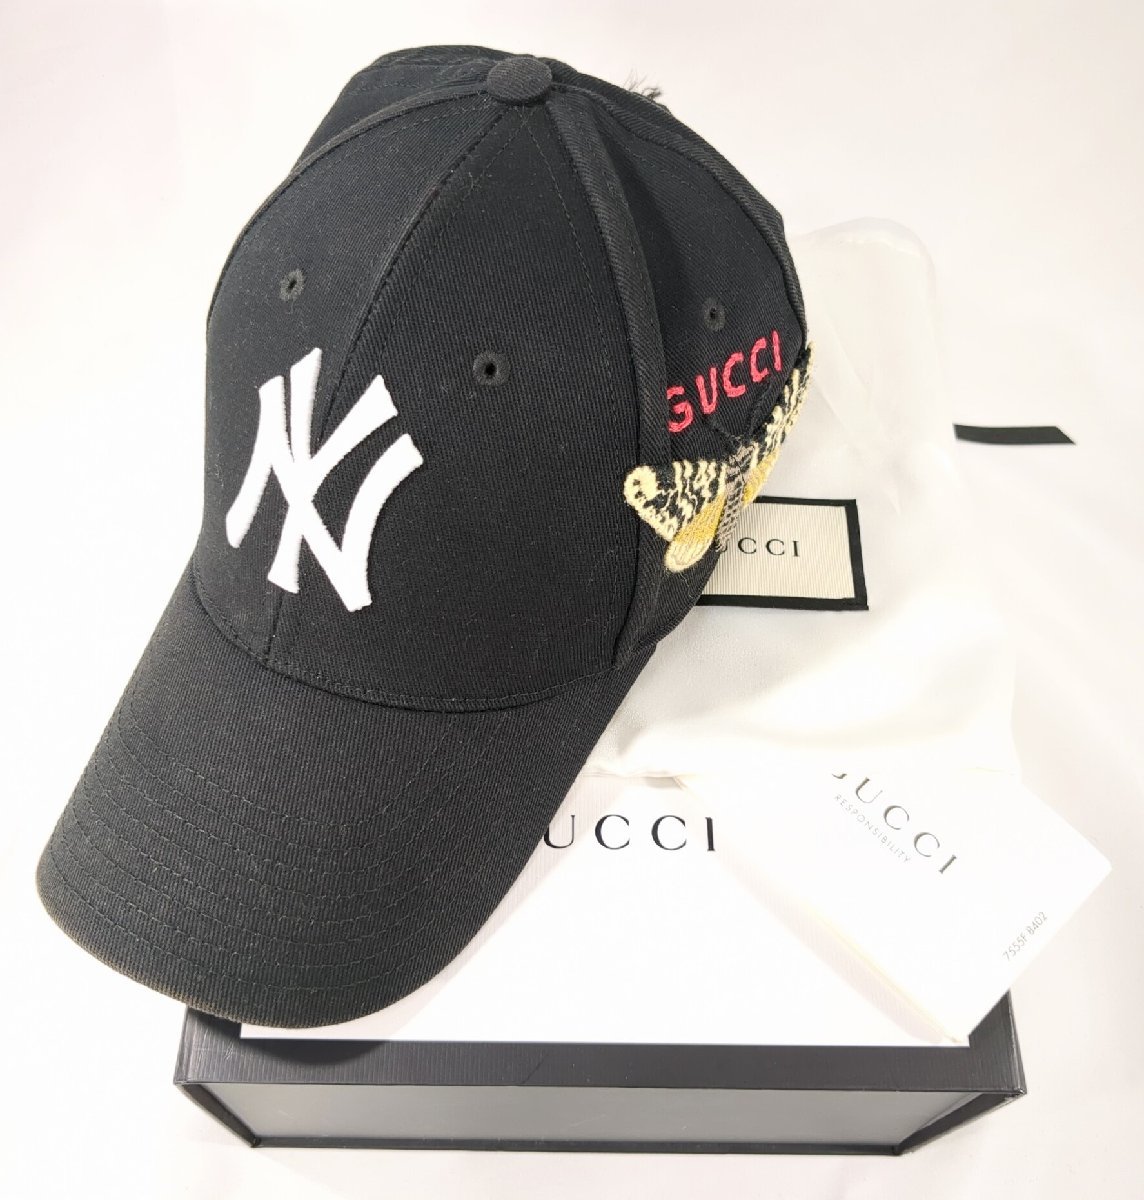 GUCCI グッチ キャップ ニューヨーク ヤンキース バタフライパッチ キャップ ベースボール 帽子 538565 サイズ 57-61cm 箱あり レア